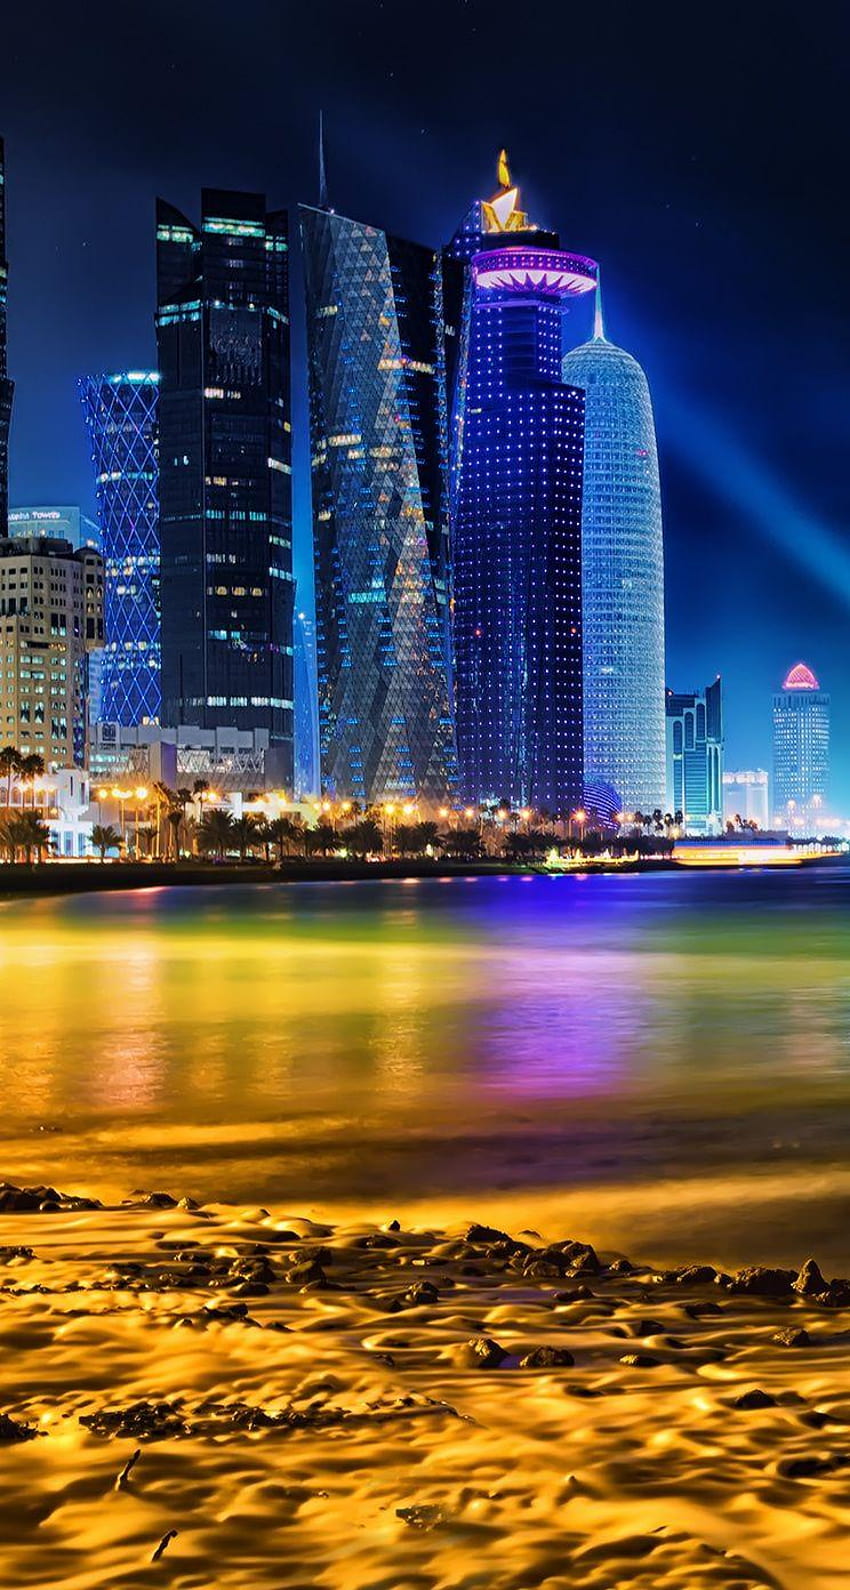 Doha Skyline là điểm nhấn không thể bỏ qua khi đến thăm Doha. Hình ảnh về Doha Skyline sẽ khiến bạn trầm trồ với vẻ đẹp độc đáo của lối kiến trúc hiện đại và tòa tháp cao chọc trời. Hãy xem ngay để chiêm ngưỡng tầm nhìn đẹp nhất của thành phố Doha!